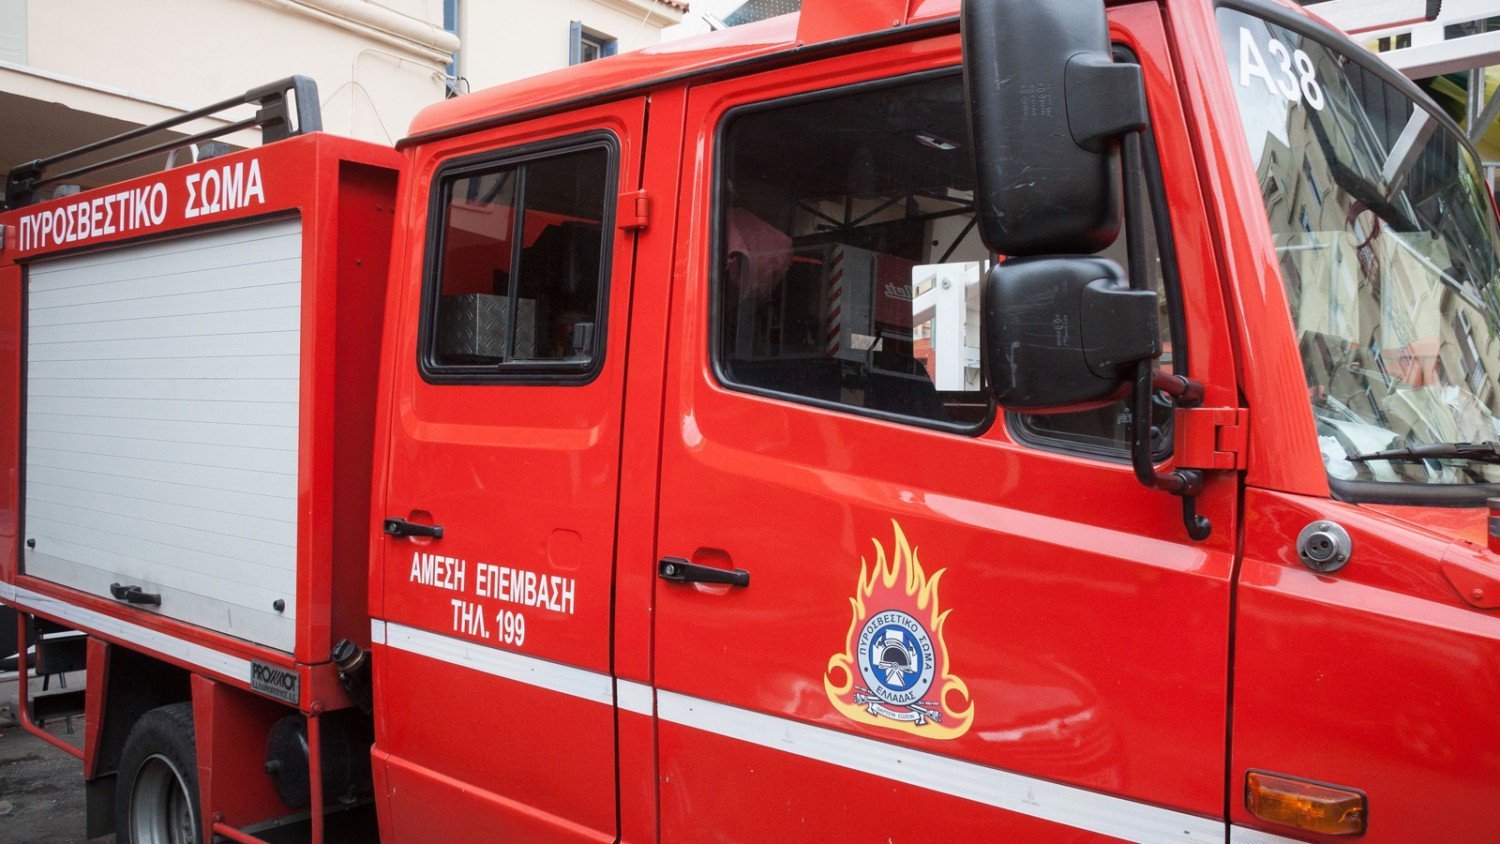 Μάνδρα: Φορτηγό έπιασε φωτιά εν κινήσει – Στο σημείο ισχυρές πυροσβεστικές δυνάμεις